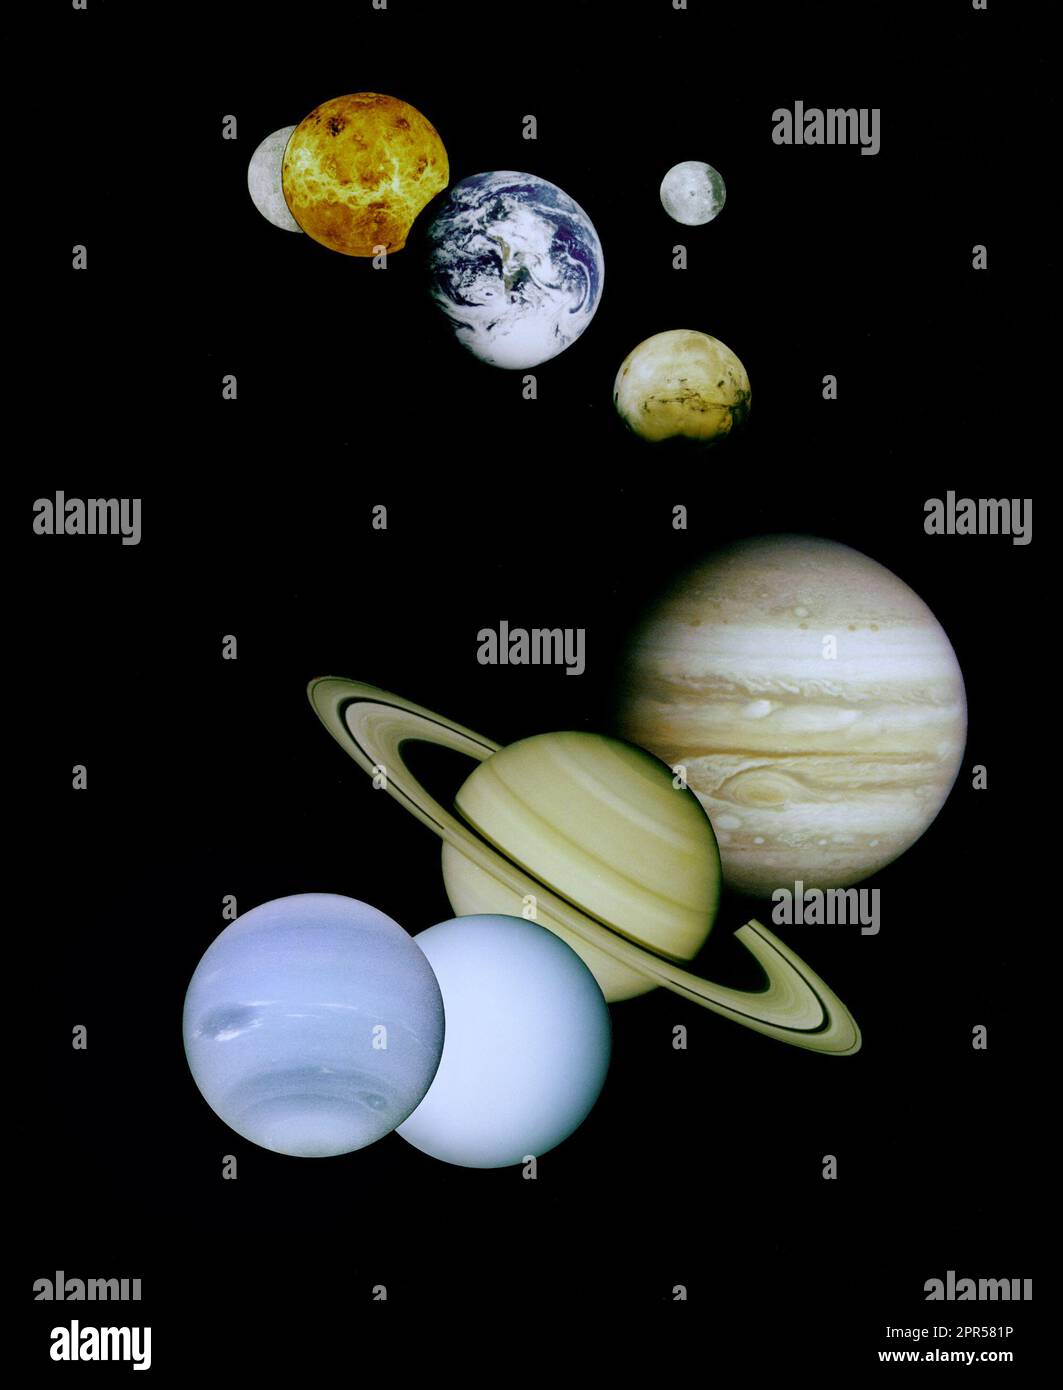 Dies ist eine Montage der planetarischen Aufnahmen von Raumsonden vom Jet Propulsion Laboratory in Pasadena verwaltet, CA. im Preis inbegriffen sind (von oben nach unten) Bilder von Merkur, Venus, Erde (und Mond), Mars, Jupiter, Saturn, Uranus und Neptun. Das Raumfahrzeug verantwortlich für diese Bilder sind wie folgt: das Quecksilber-Bild wurde aufgenommen von Mariner 10, das Bild der Venus von Magellan, der Earth-Bild von Galileo, das Mars-Bild von Viking und Jupiter, Saturn, Uranus und Neptun Bilder von Voyager. Pluto ist nicht ausgewiesen, da noch keine Raumsonde besucht hat. Die inneren Planeten (Merkur, Venus, Erde, Mond und Mars) Stockfoto